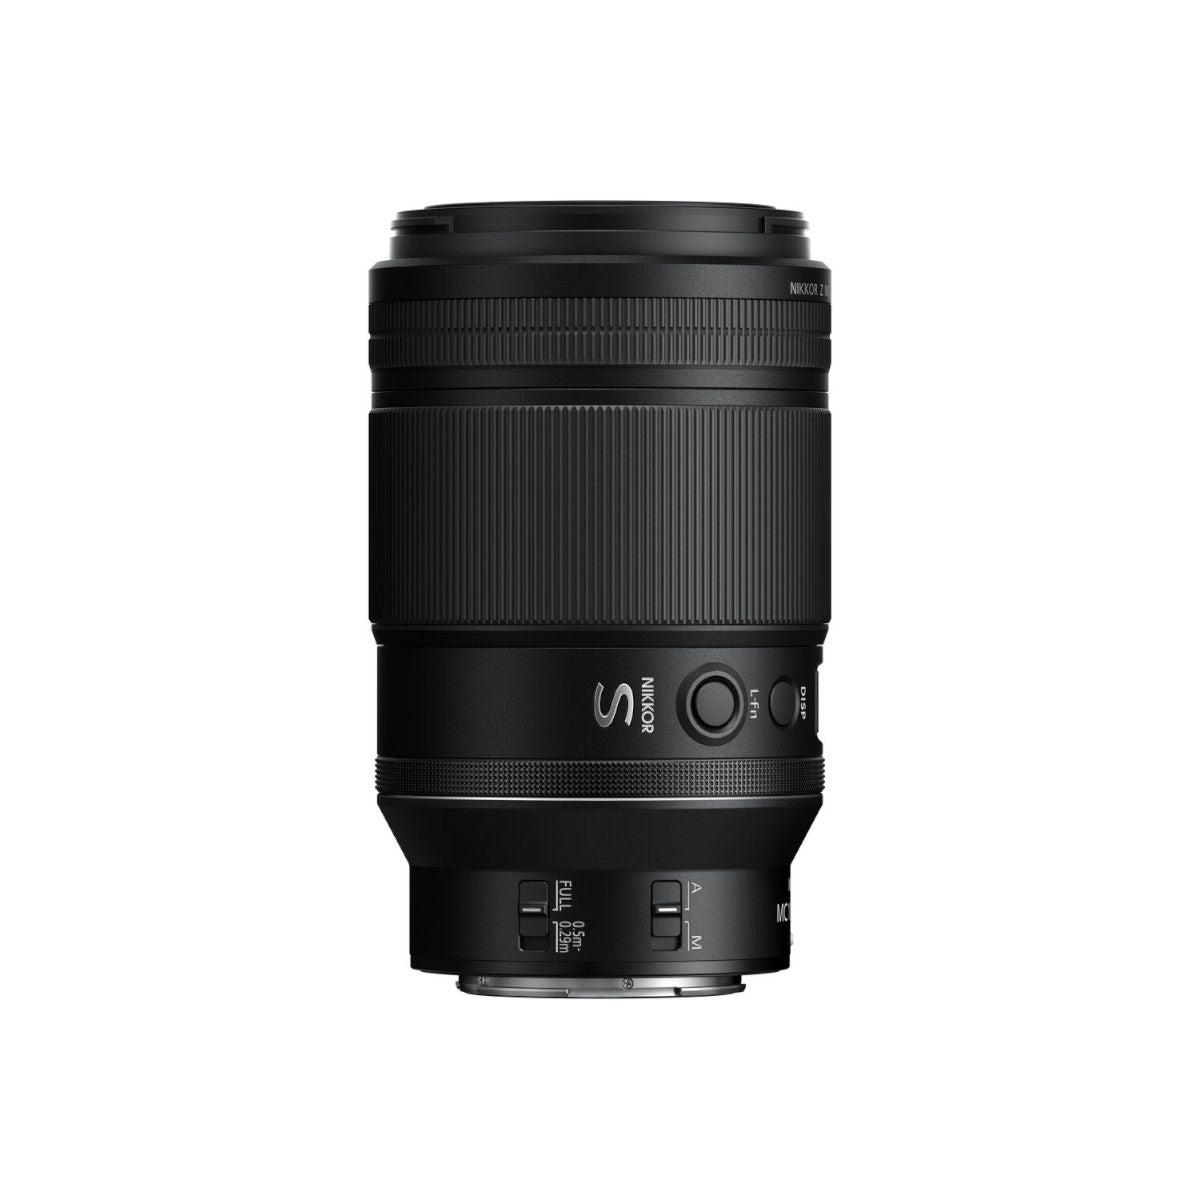 Nikon Z MC 105mm f/2.8 VR S Macro Lens Z Mount